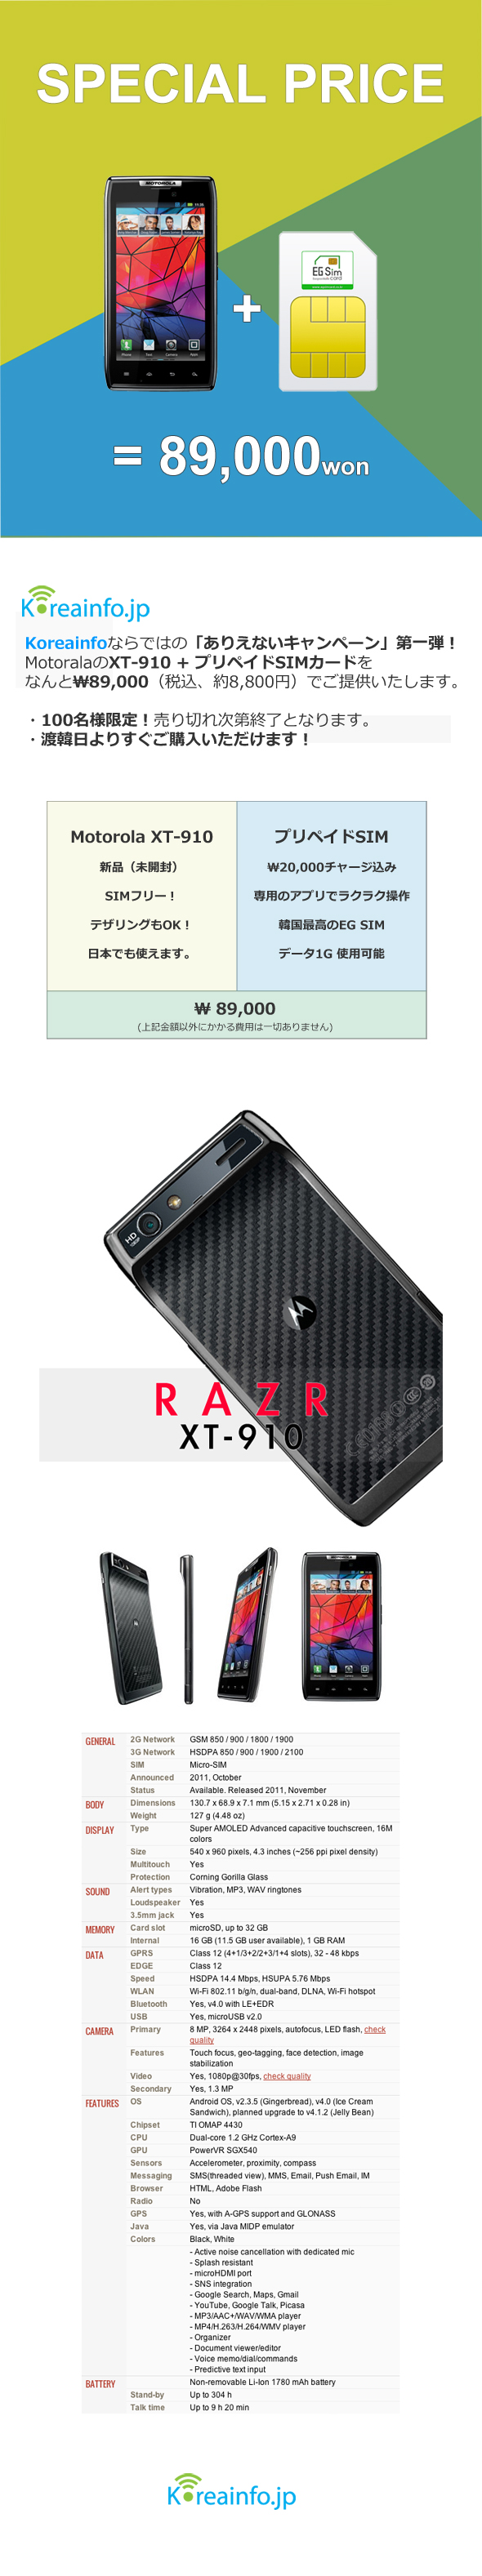 Motorola RAZR XT910 Koreainfo